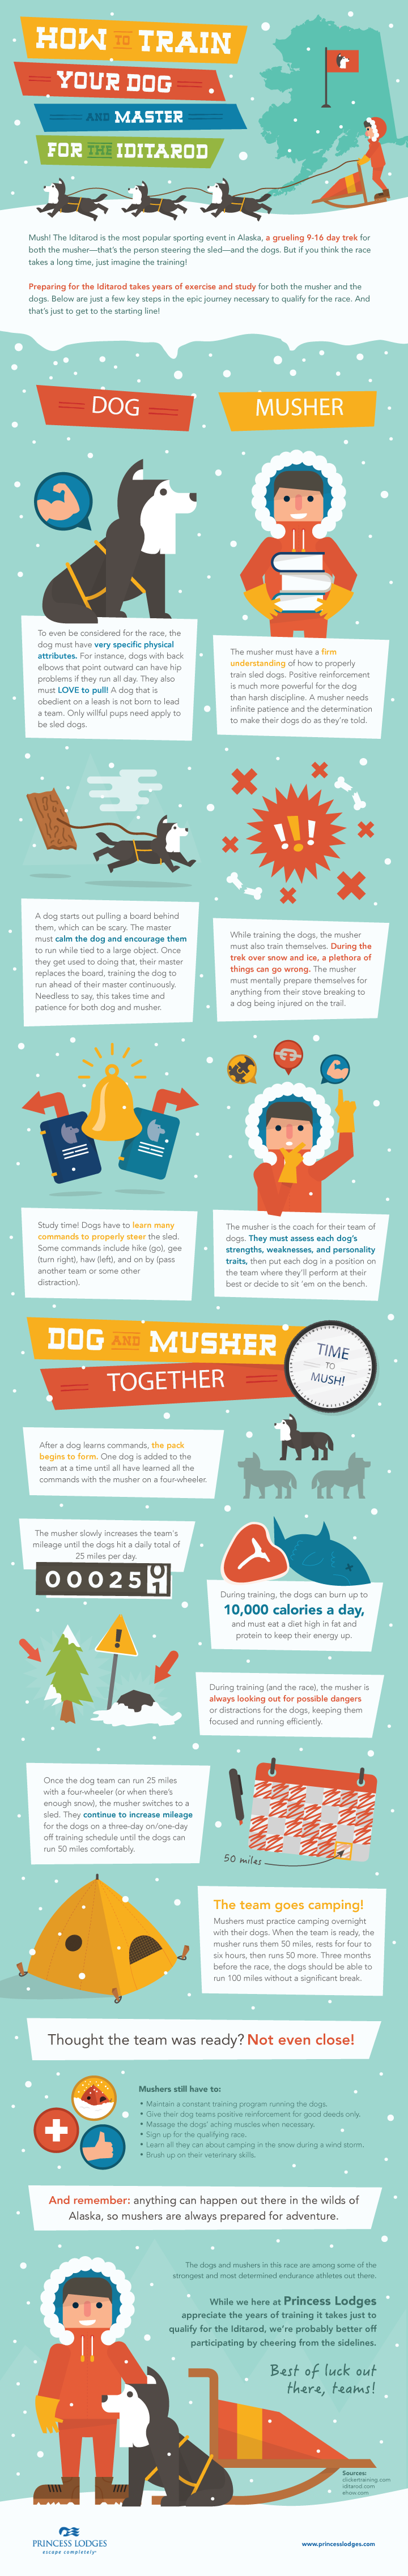 Sehr coole Infos darüber, wie Musher und ihre Hunde für den Iditarod trainieren. Es ist verrückt und inspirierend, was sie durchmachen.